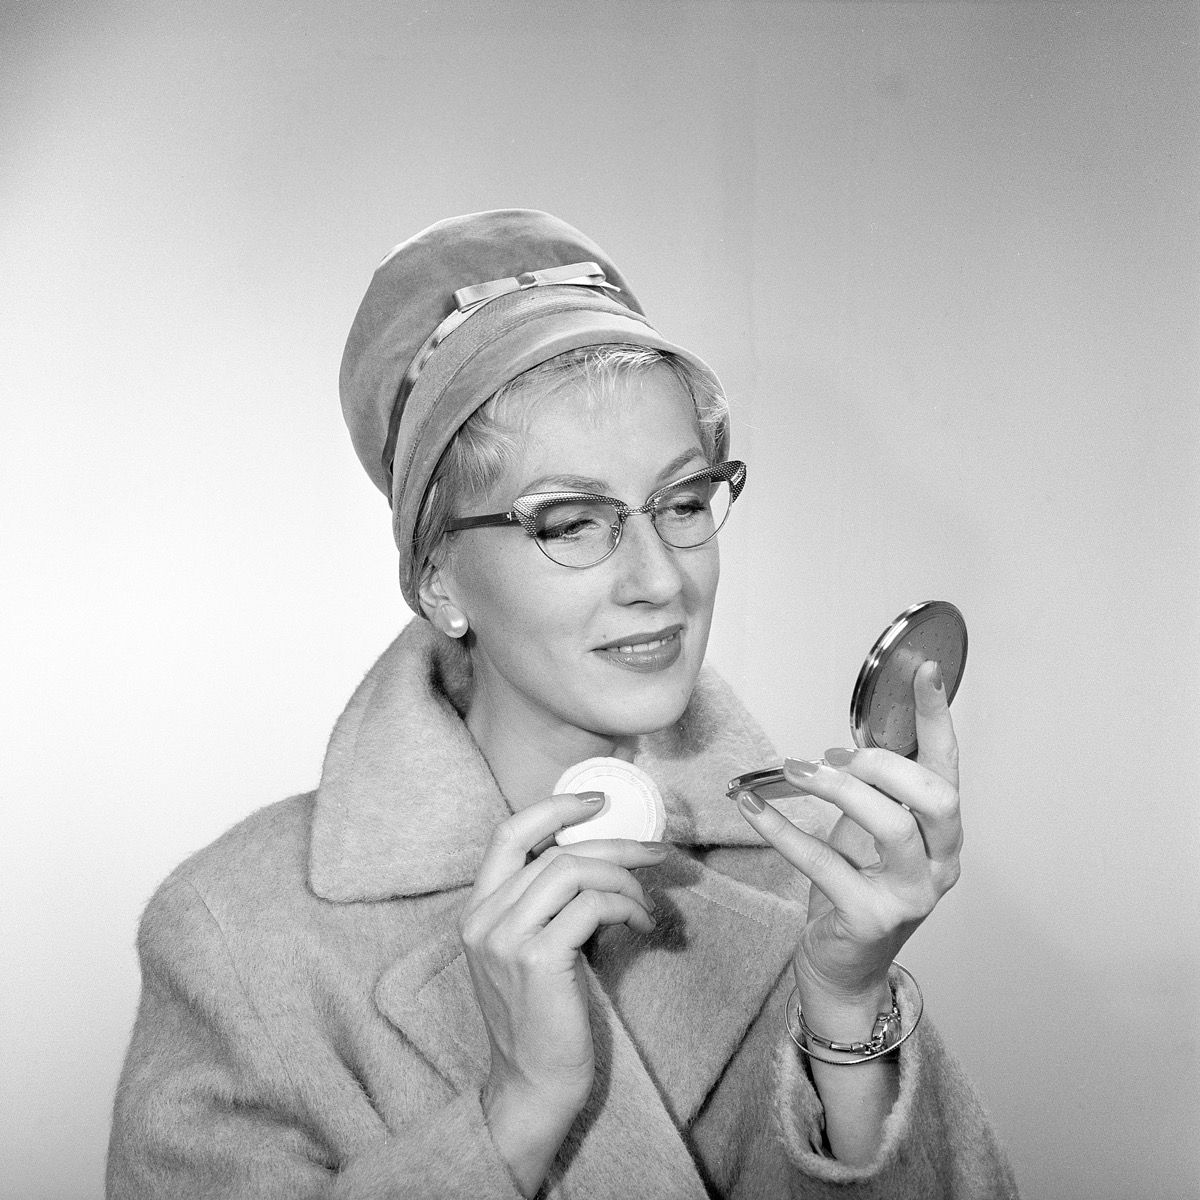 Trang điểm thập niên 1950. Một phụ nữ trẻ đang soi mình trong gương bỏ túi và cải thiện lớp trang điểm của mình. Cô ấy đội một chiếc mũ thời trang, đeo kính đặc trưng của thập niên 50 và mặc áo khoác. Những năm 1950